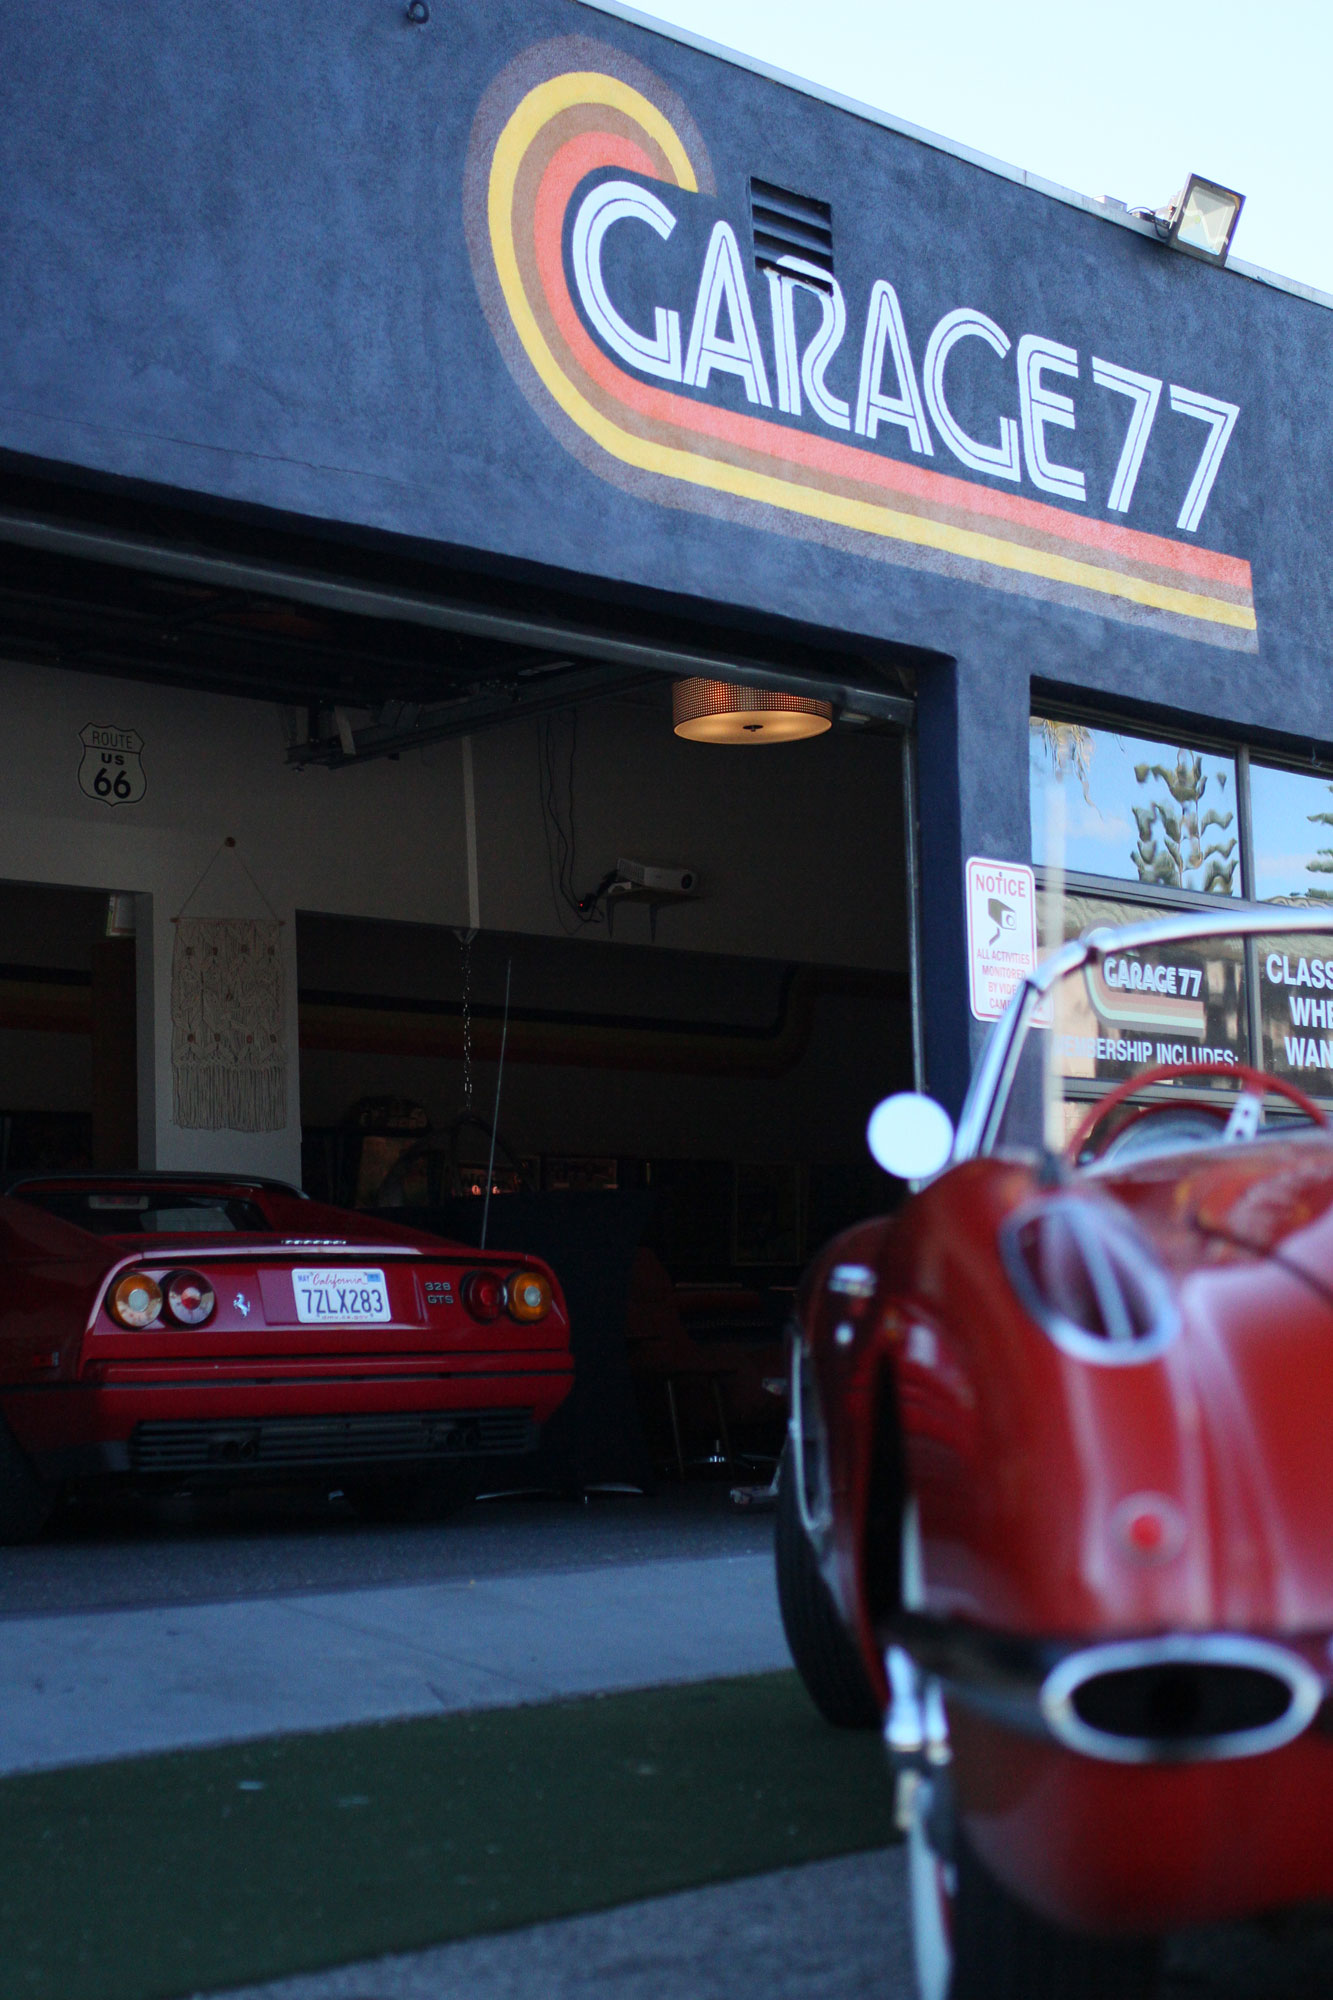 Corvette c1 och Ferrari 328 gtsi, båda skinande röda vid Garage 77